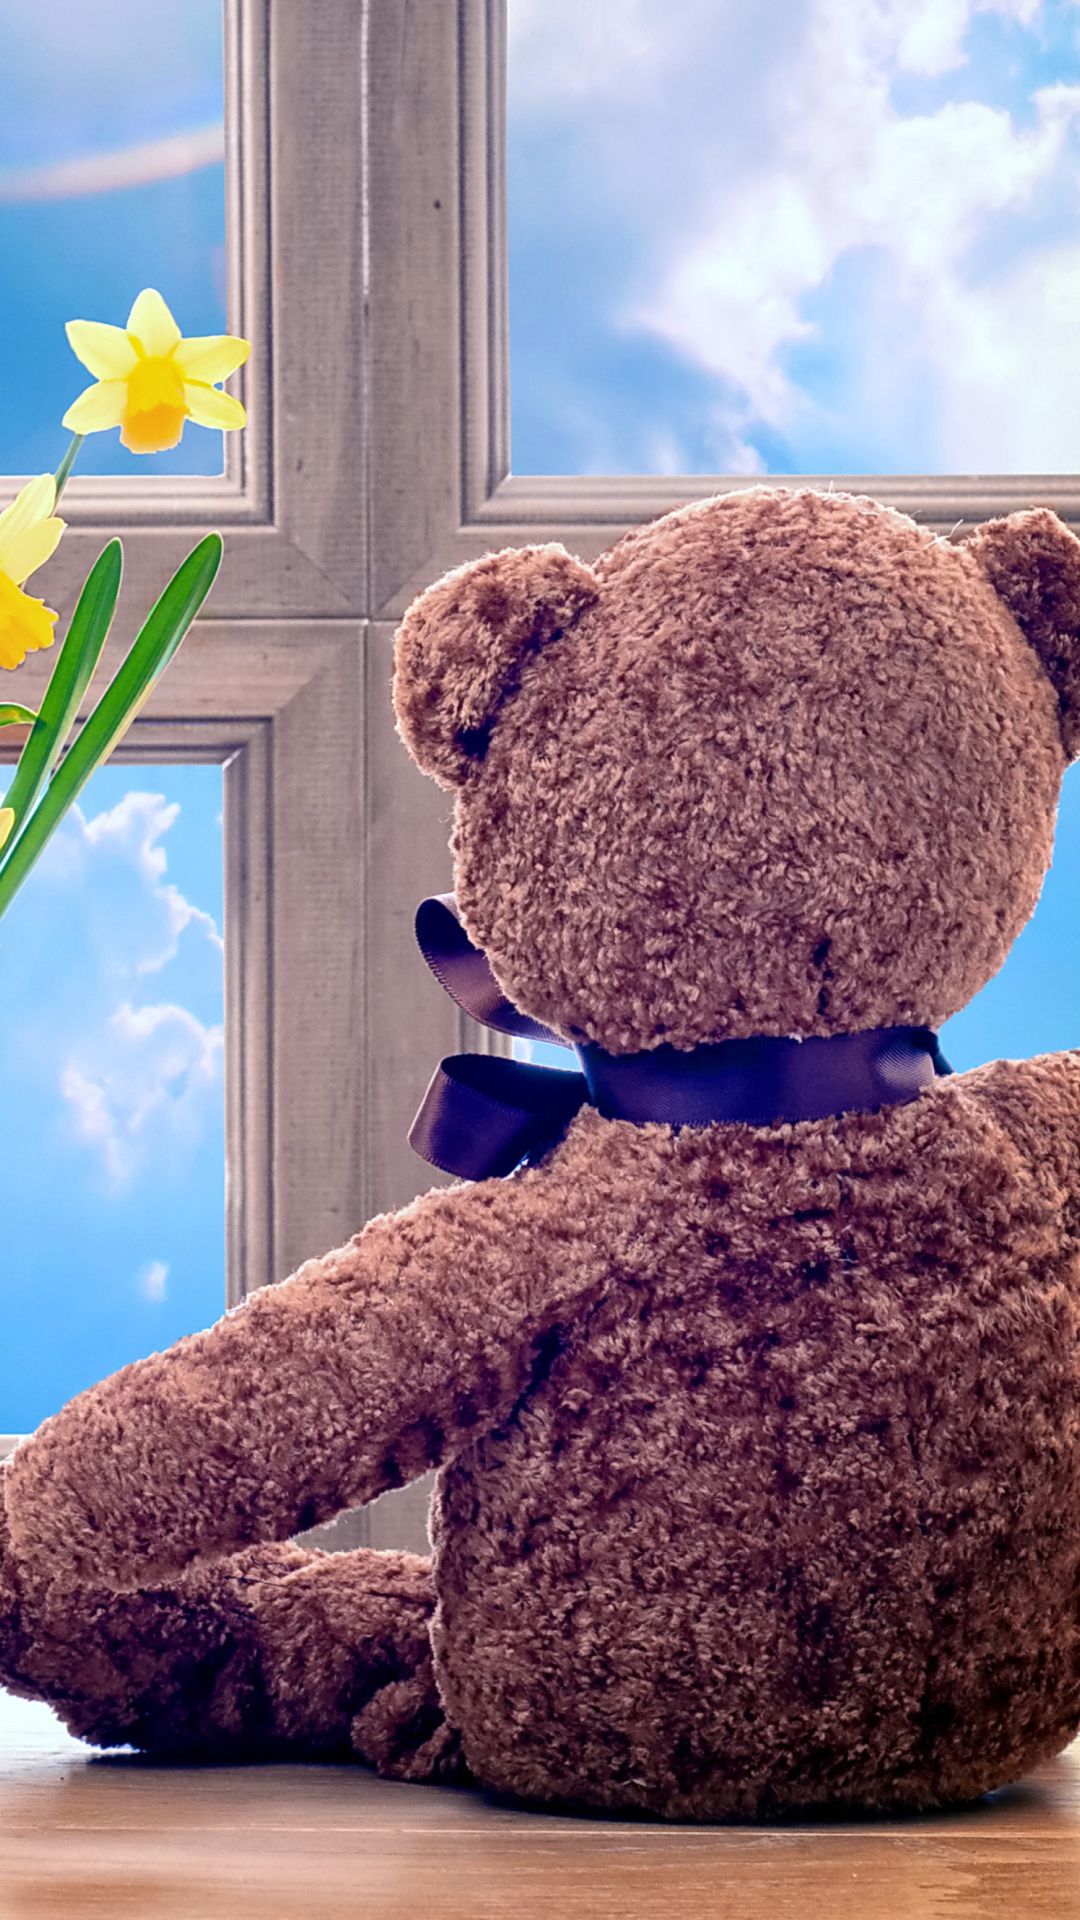 Обои Teddy Bear with Bouquet 1080x1920